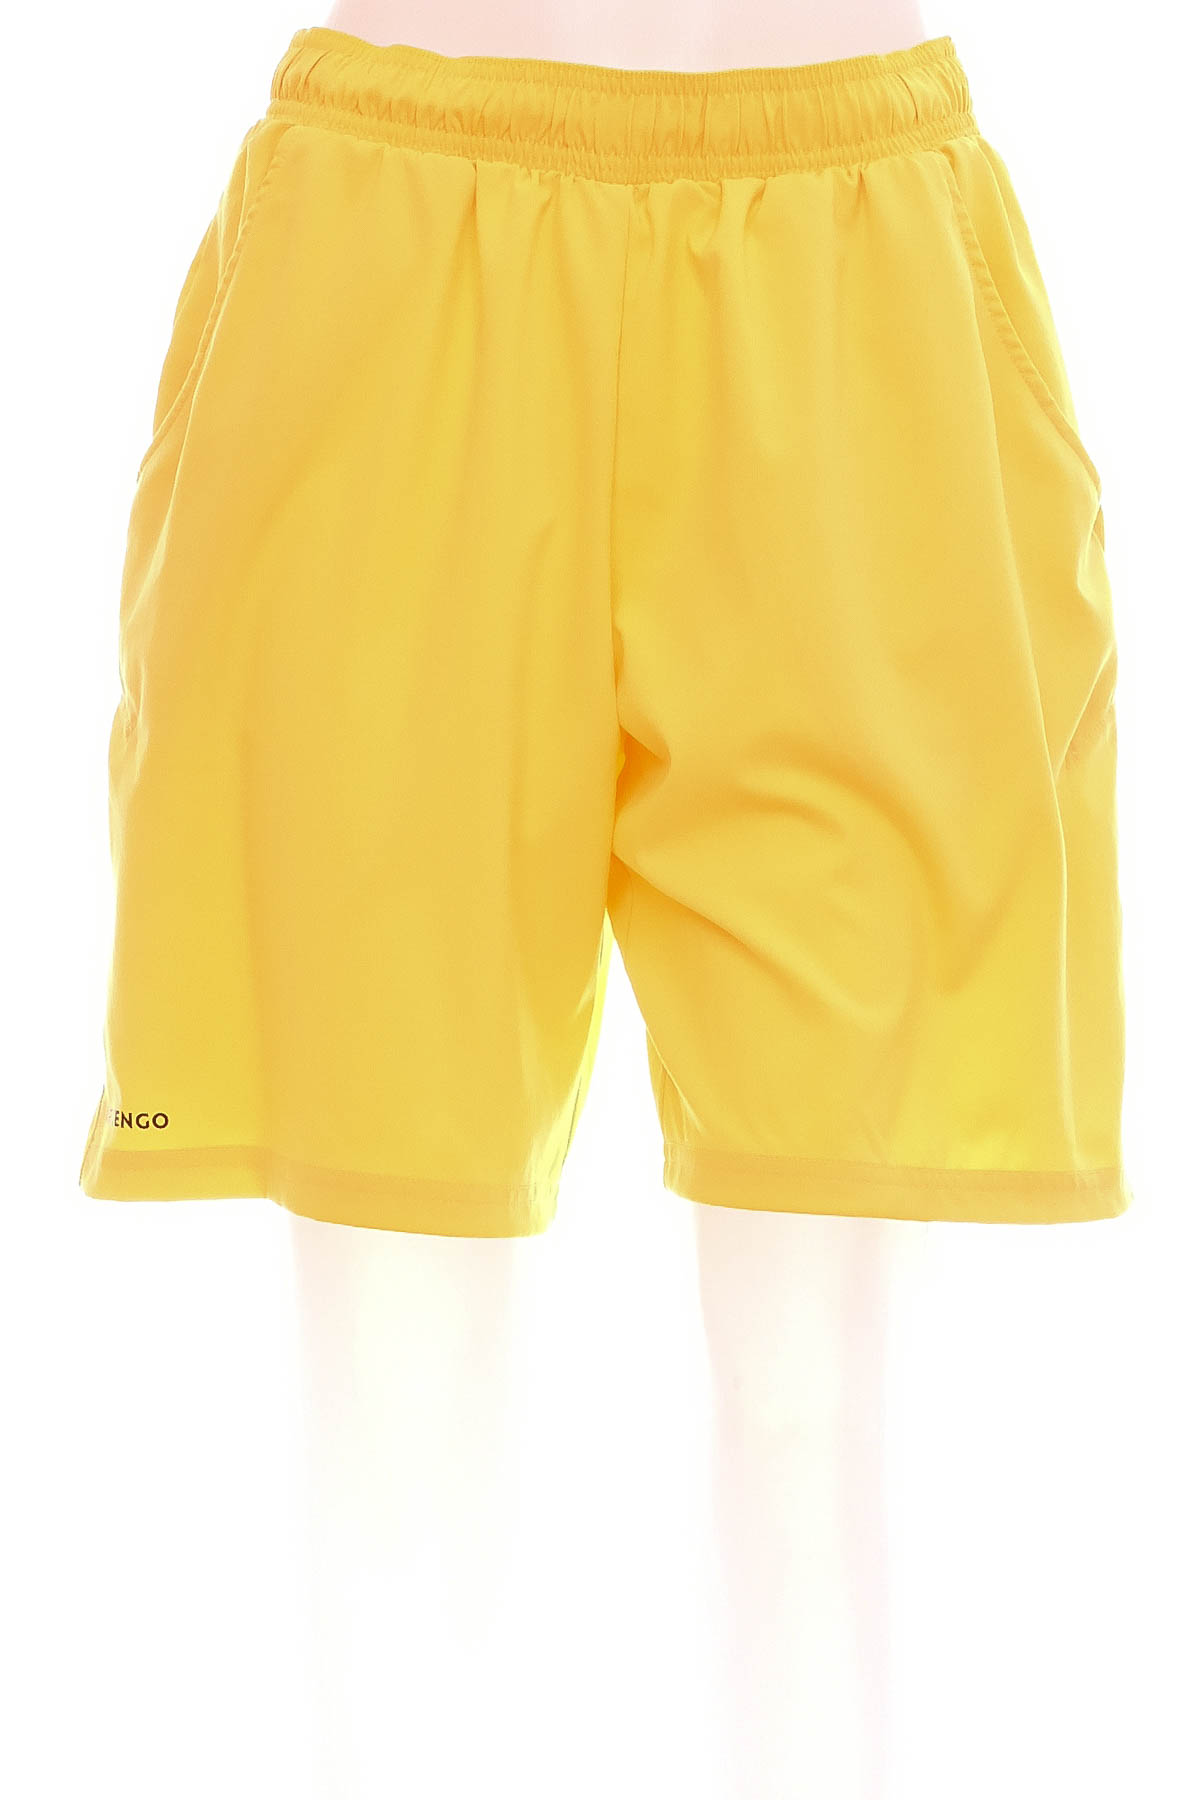 Men's shorts - Artengo - 0